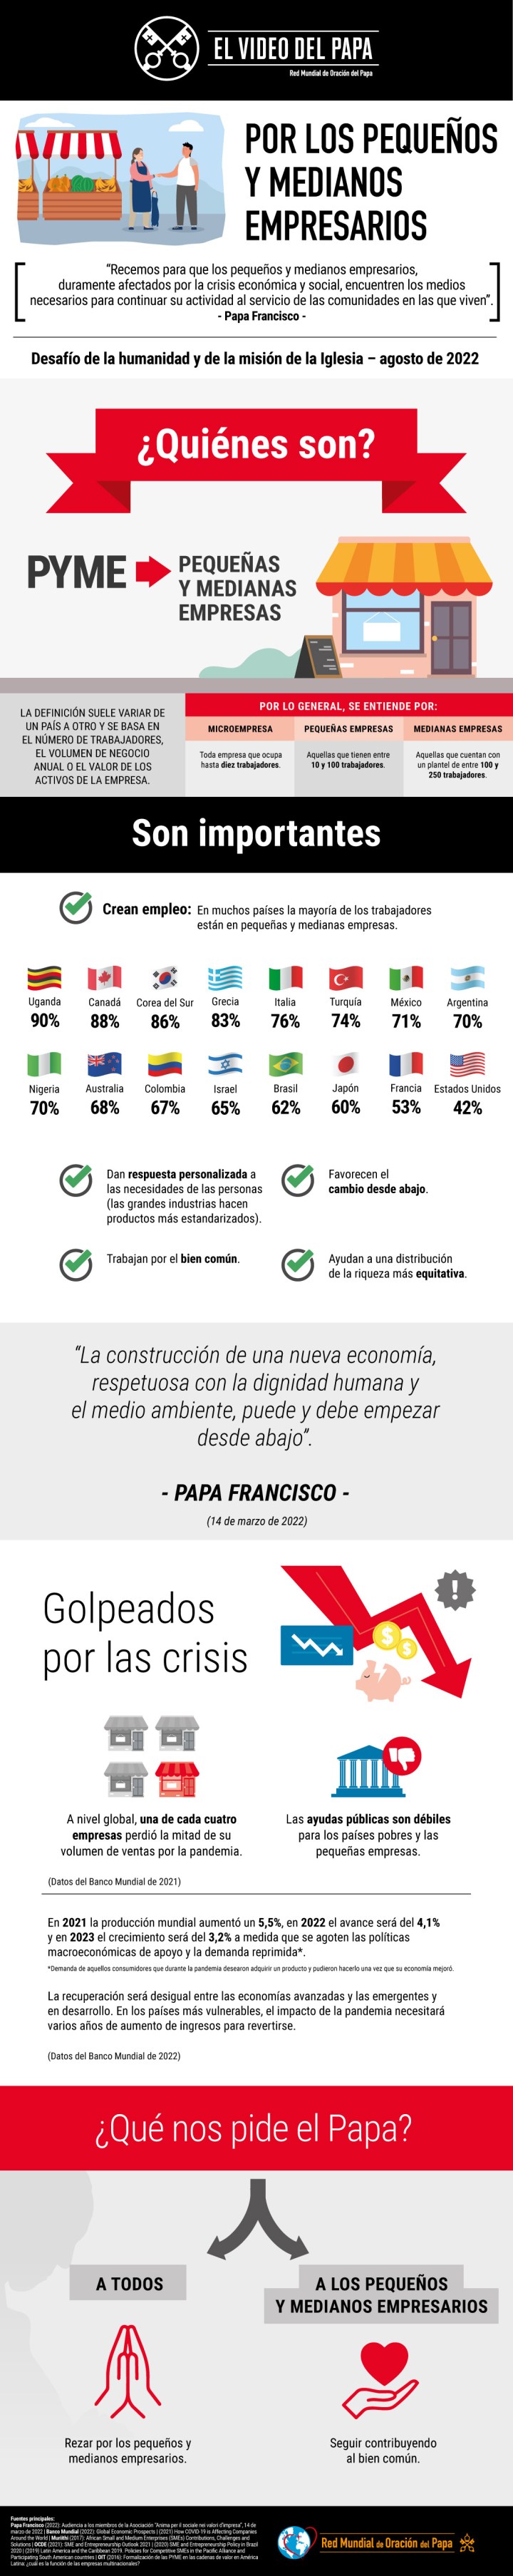 Infographic-TPV-8-2022-ES-Por-los-pequeños-y-medianos-empresarios.jpg